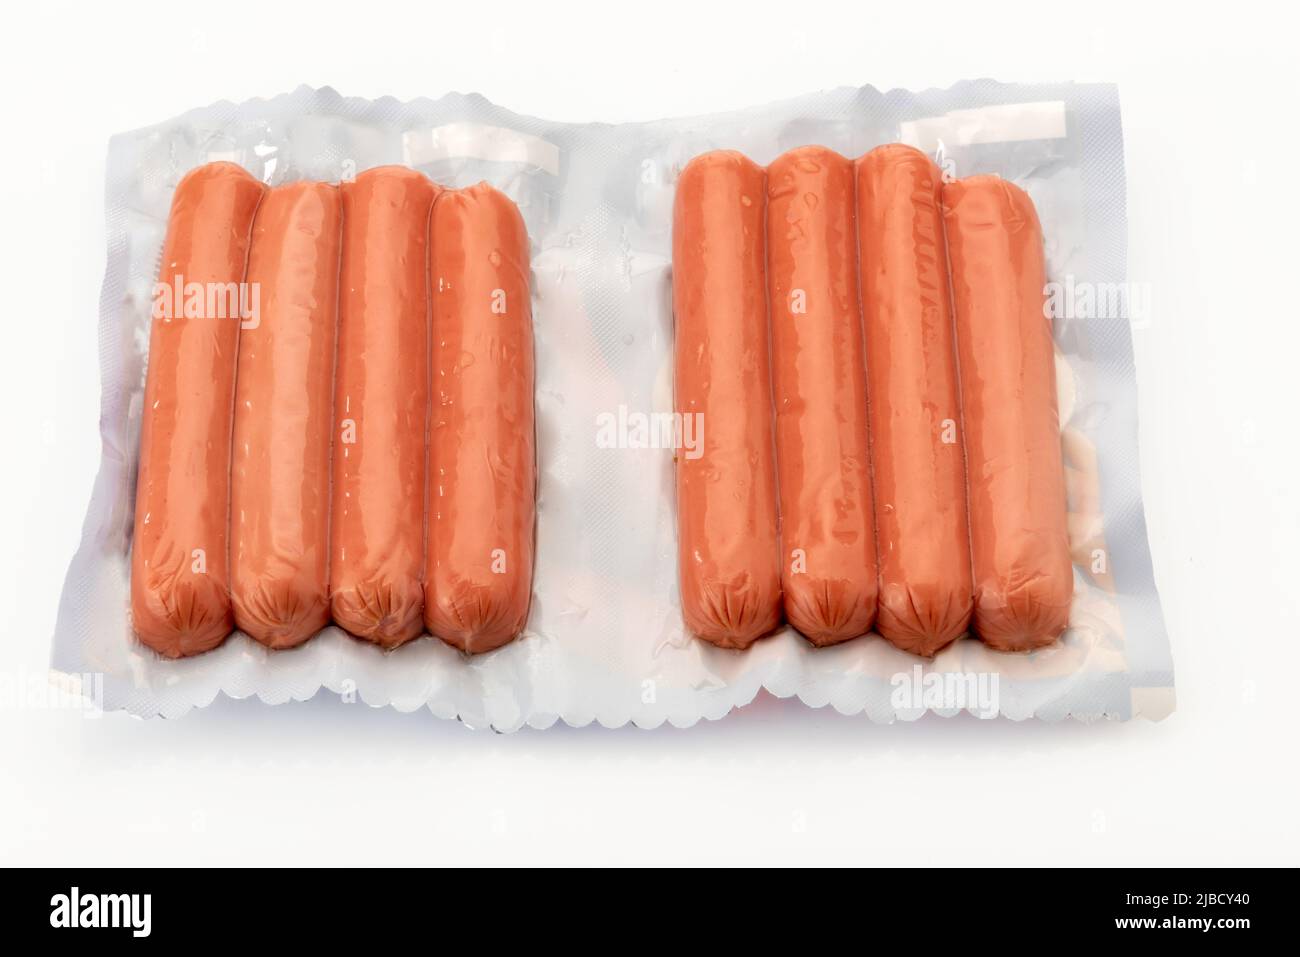 Wurst für Hot Dog oder Wurstel in vakuumverpackter, versiegelter Verpackung für Sous-Vide-Kochen isoliert auf weißem Hintergrund in der Draufsicht. Stockfoto